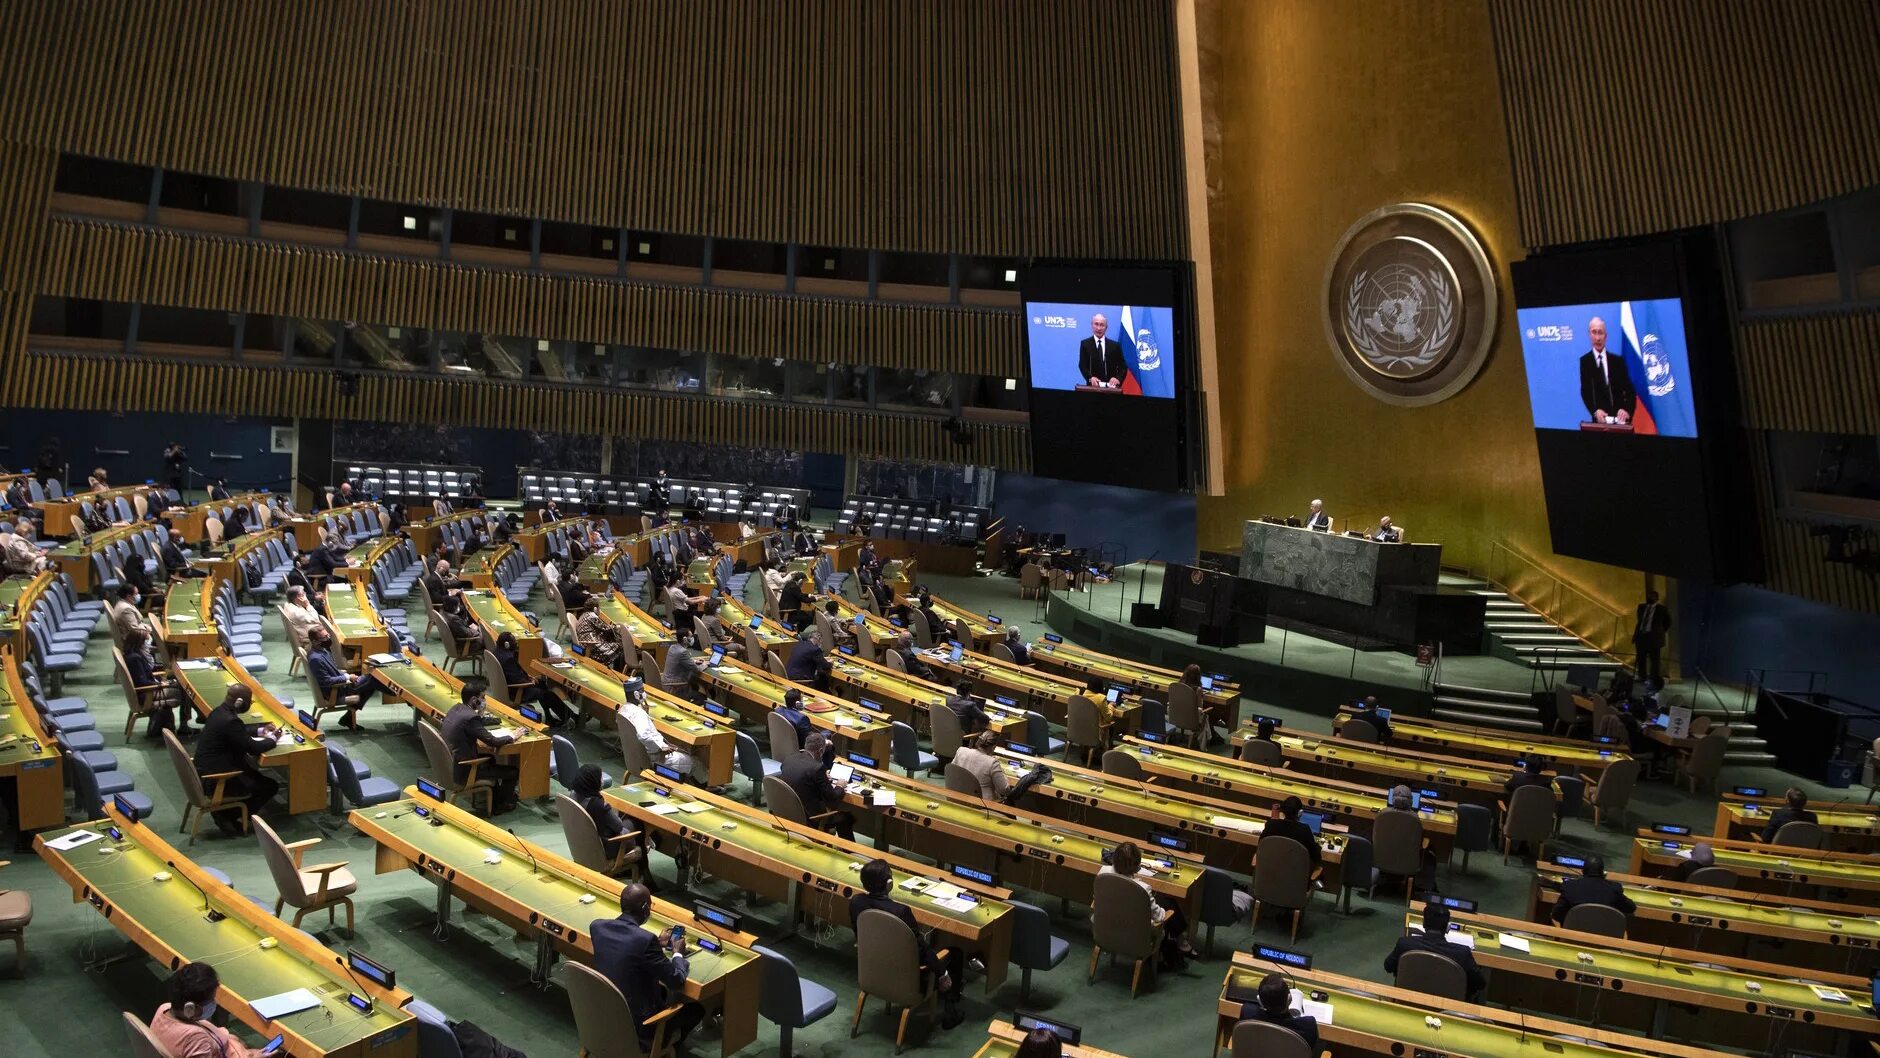 Зал Генеральной Ассамблеи ООН. Зал заседаний Генассамблеи ООН. Заседание Генеральной Ассамблеи ООН. Генеральная Ассамблея ООН 2018.